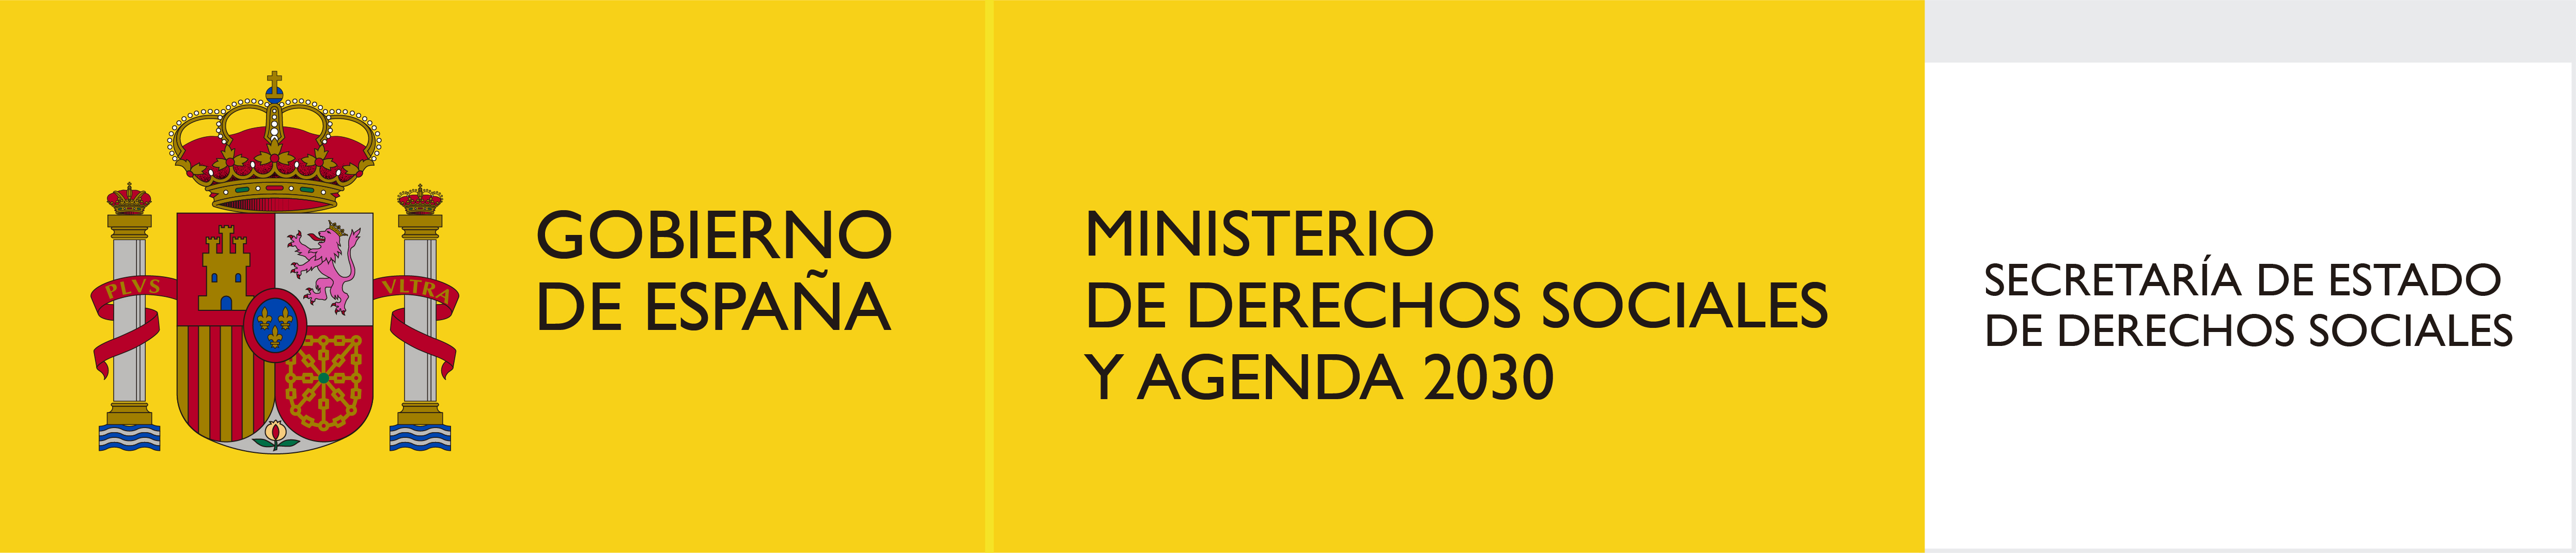 Ministerio de derechos sociales y agenda 2030